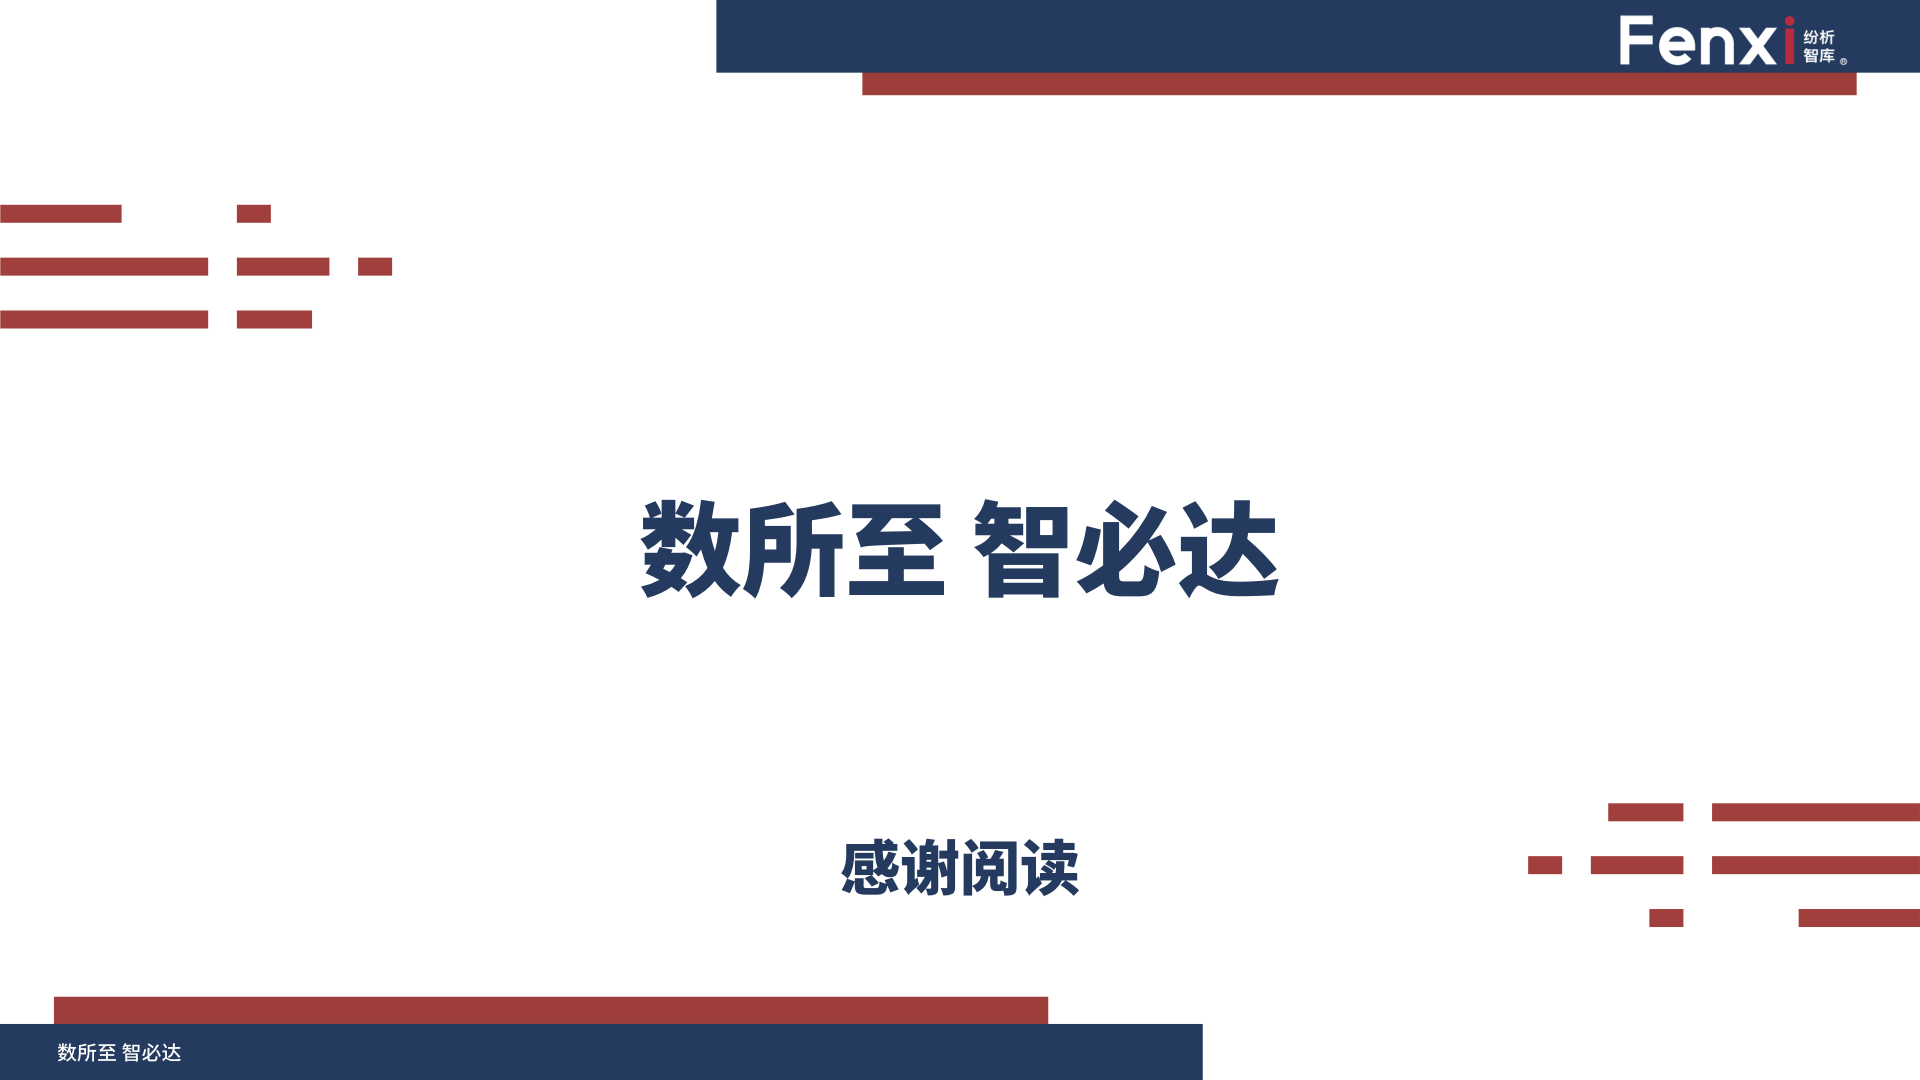 【V8】《2020年中国数字营销与数据智能解决方案生态图报告》0106.047.jpeg